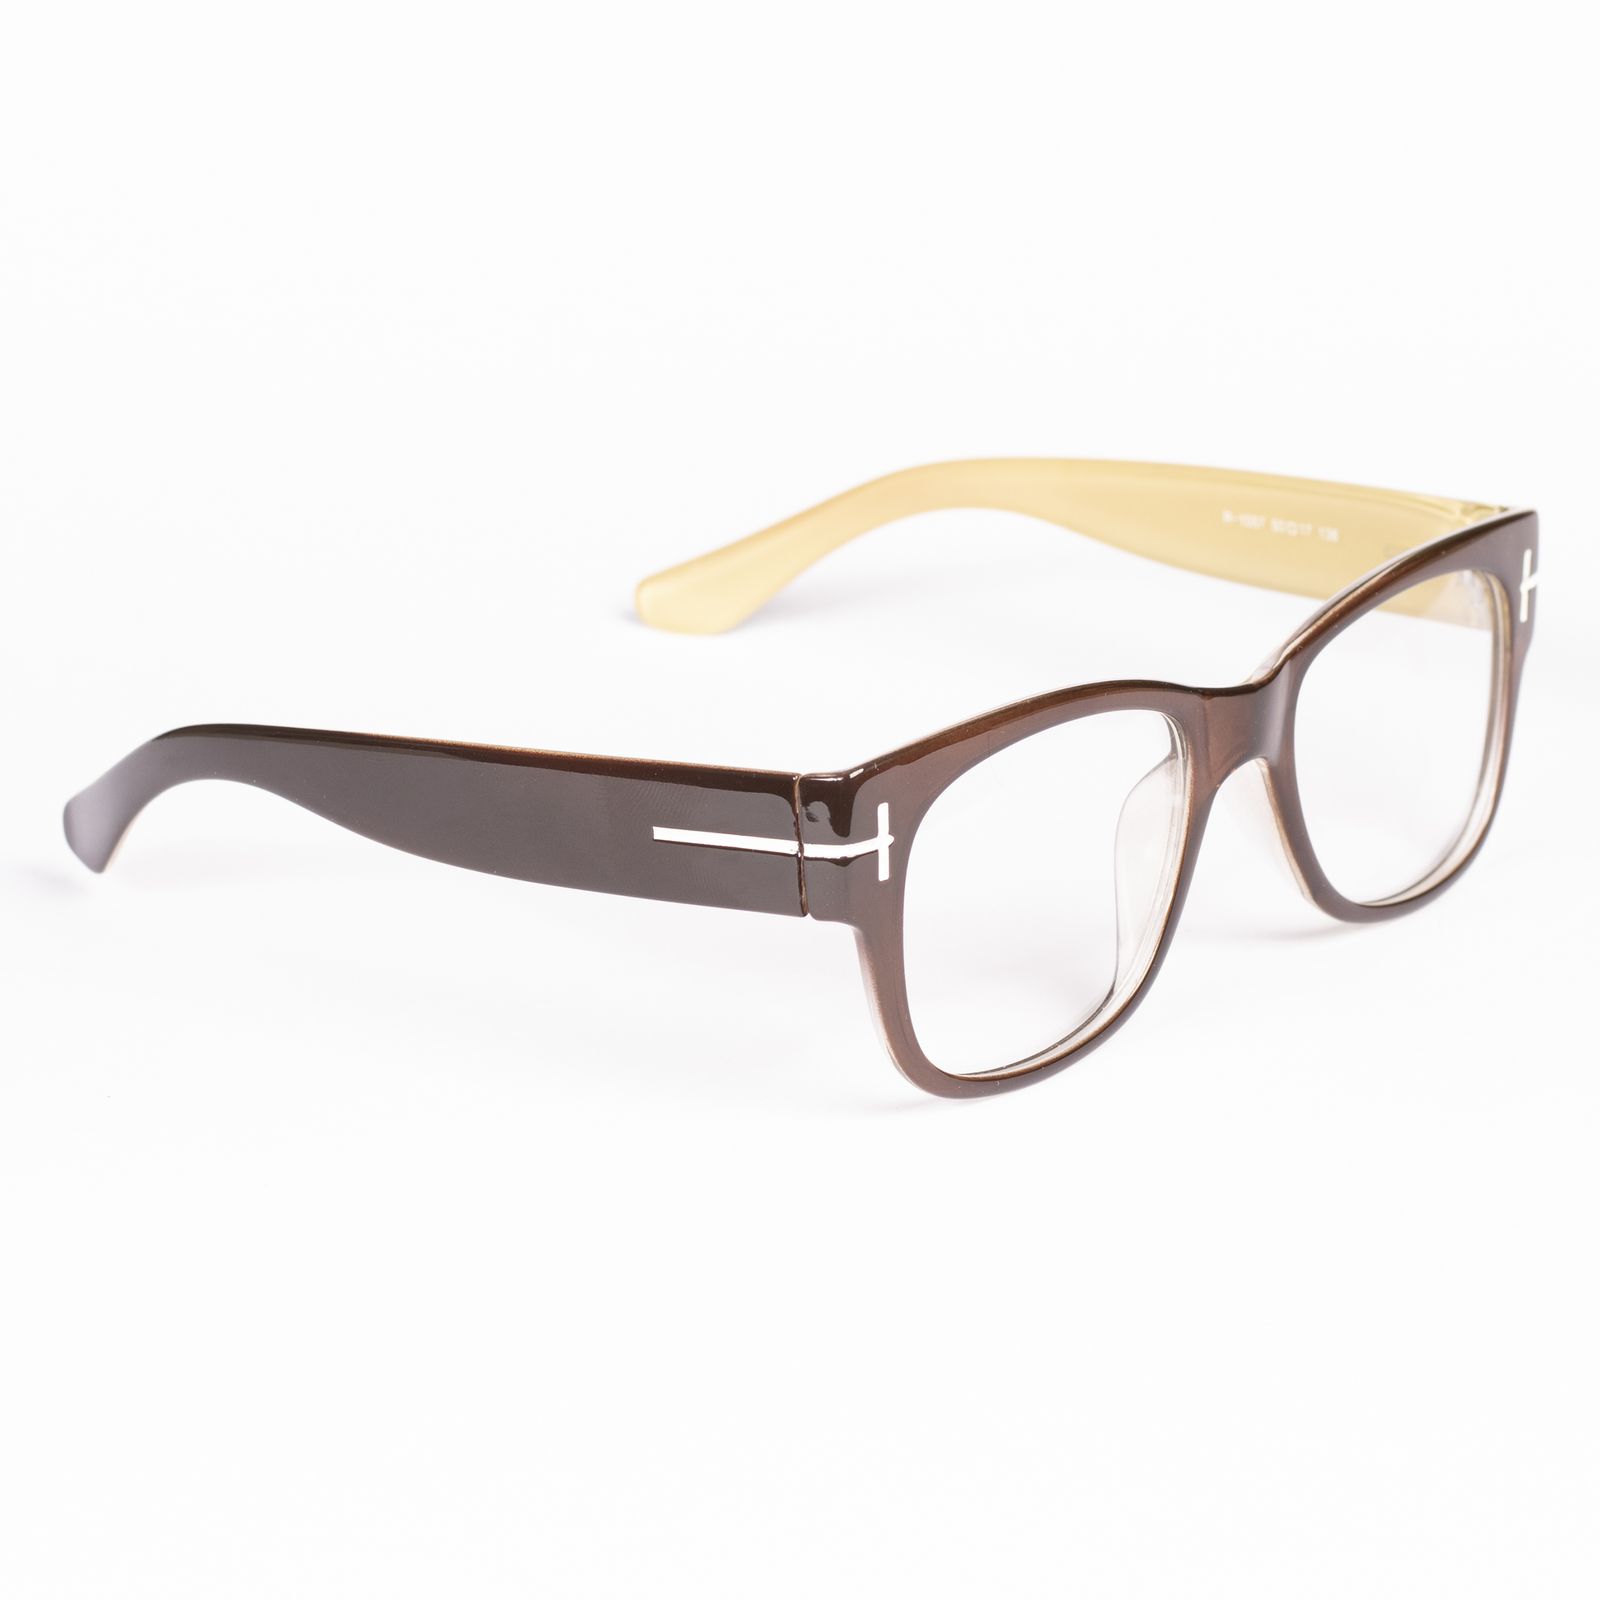 فریم عینک طبی مدل TF2022 -  - 3